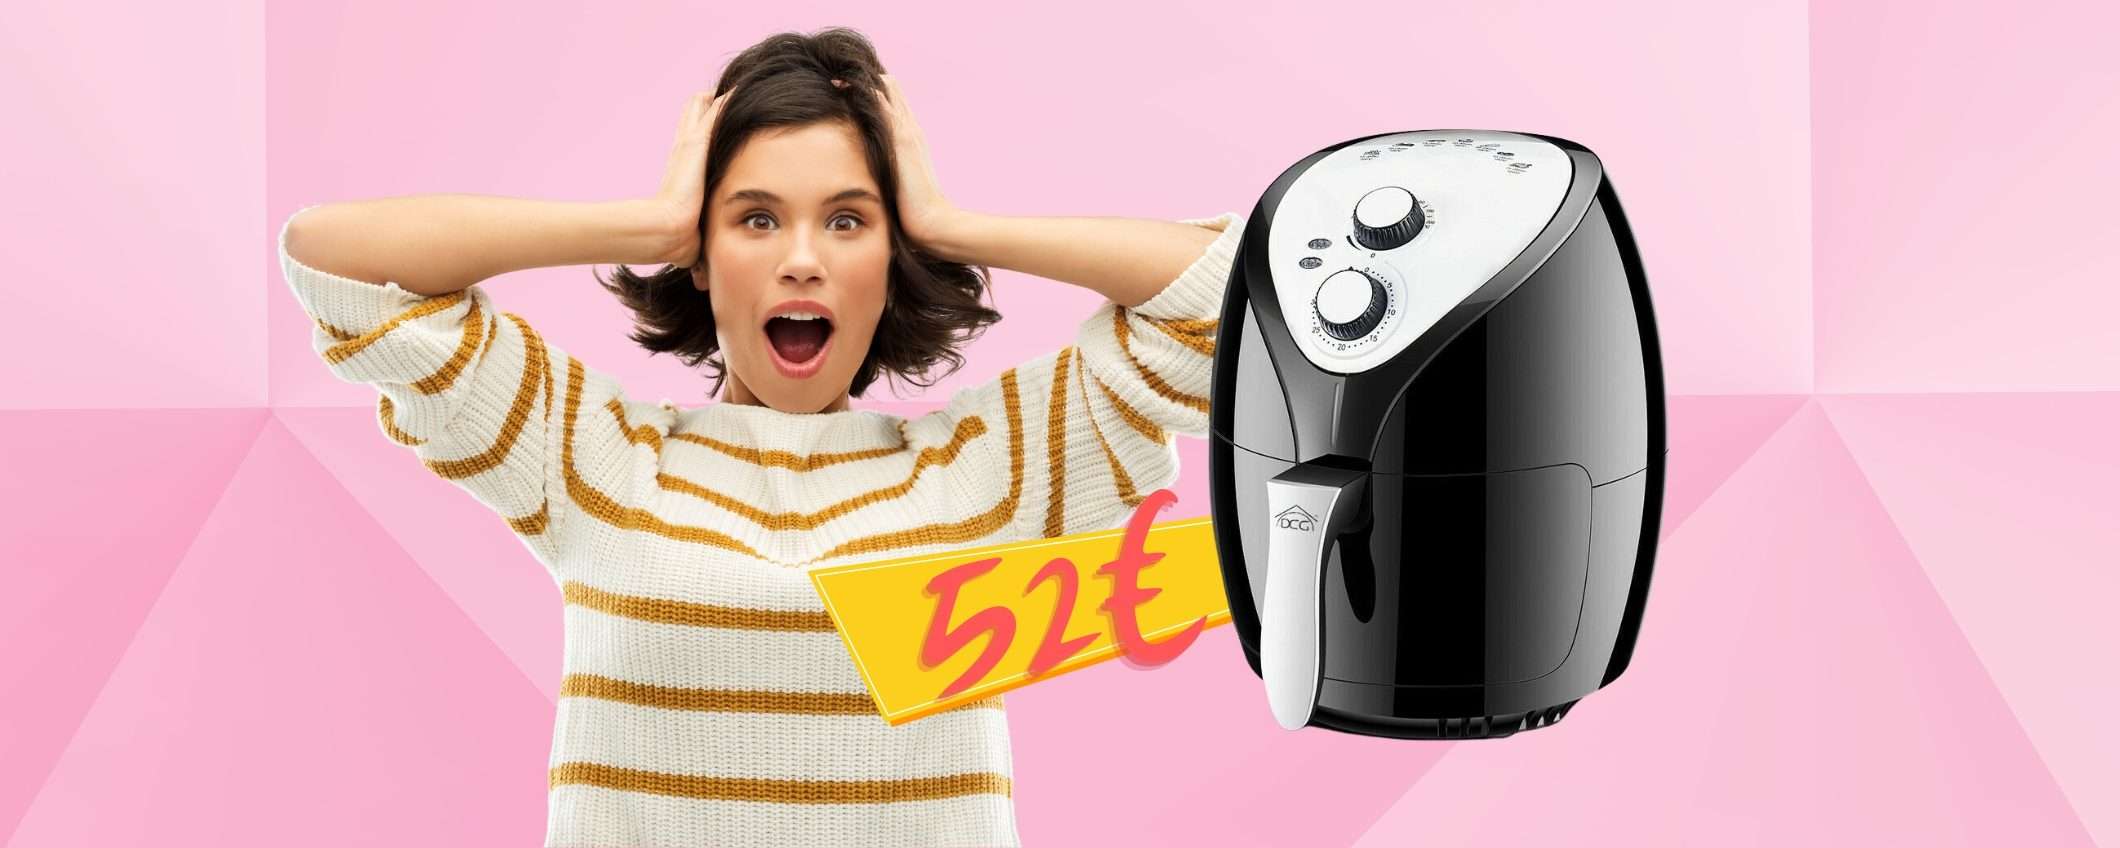 Offerta BOMBA su eBay: friggitrice ad aria da 3,2 litri a 52€